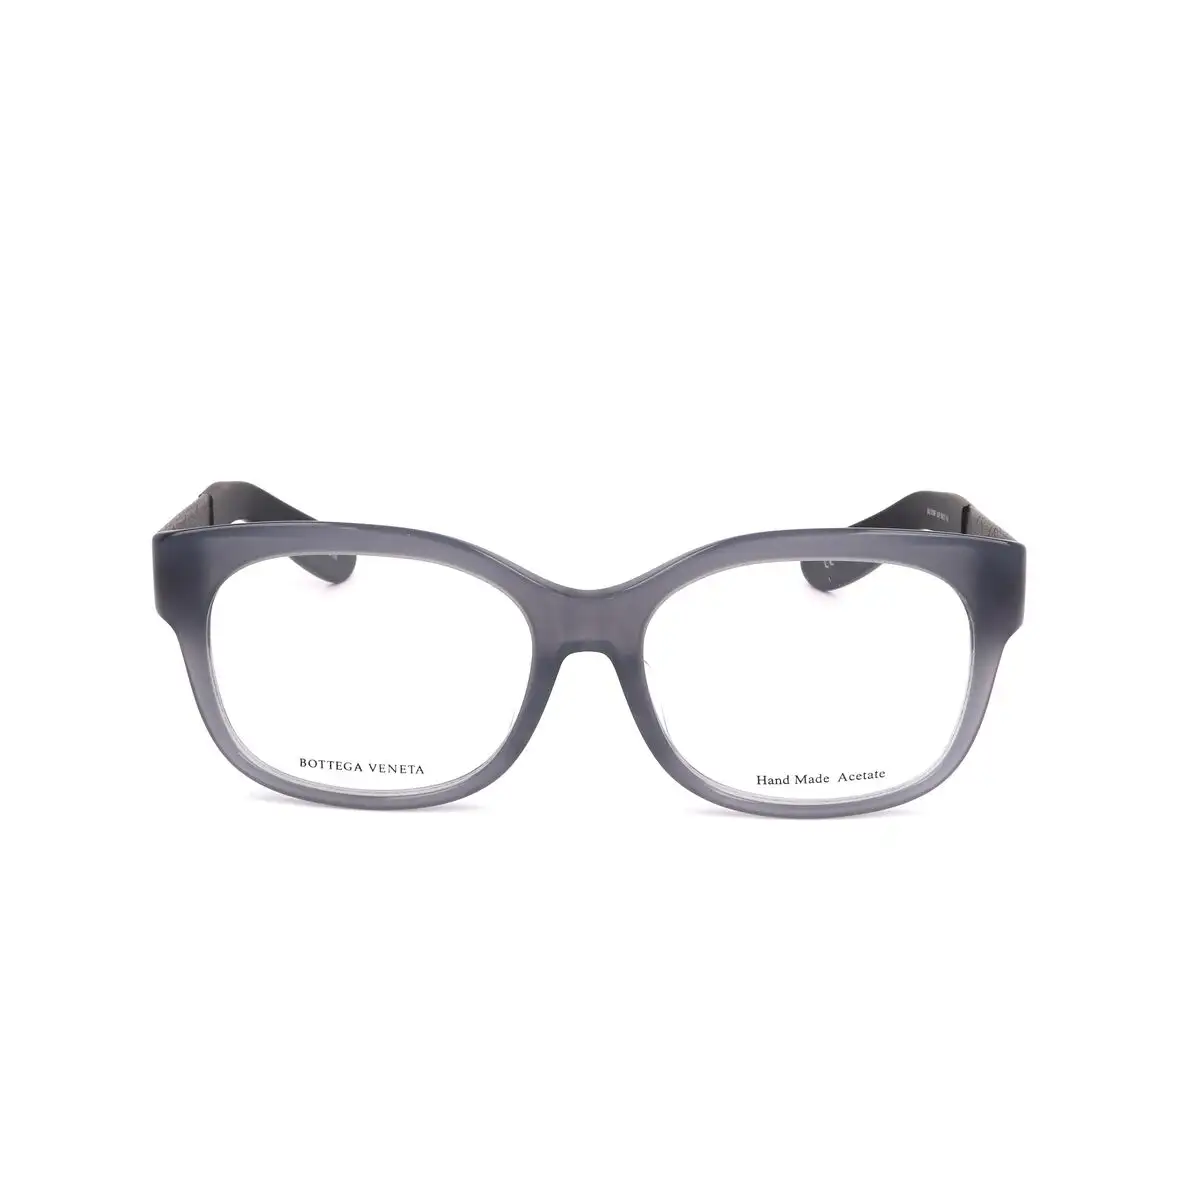 Monture de lunettes femme bottega veneta bv 313 fu gris marron_2958. DIAYTAR SENEGAL - Votre Source de Trouvailles uniques. Naviguez à travers notre catalogue et trouvez des articles qui vous distinguent et reflètent votre unicité.